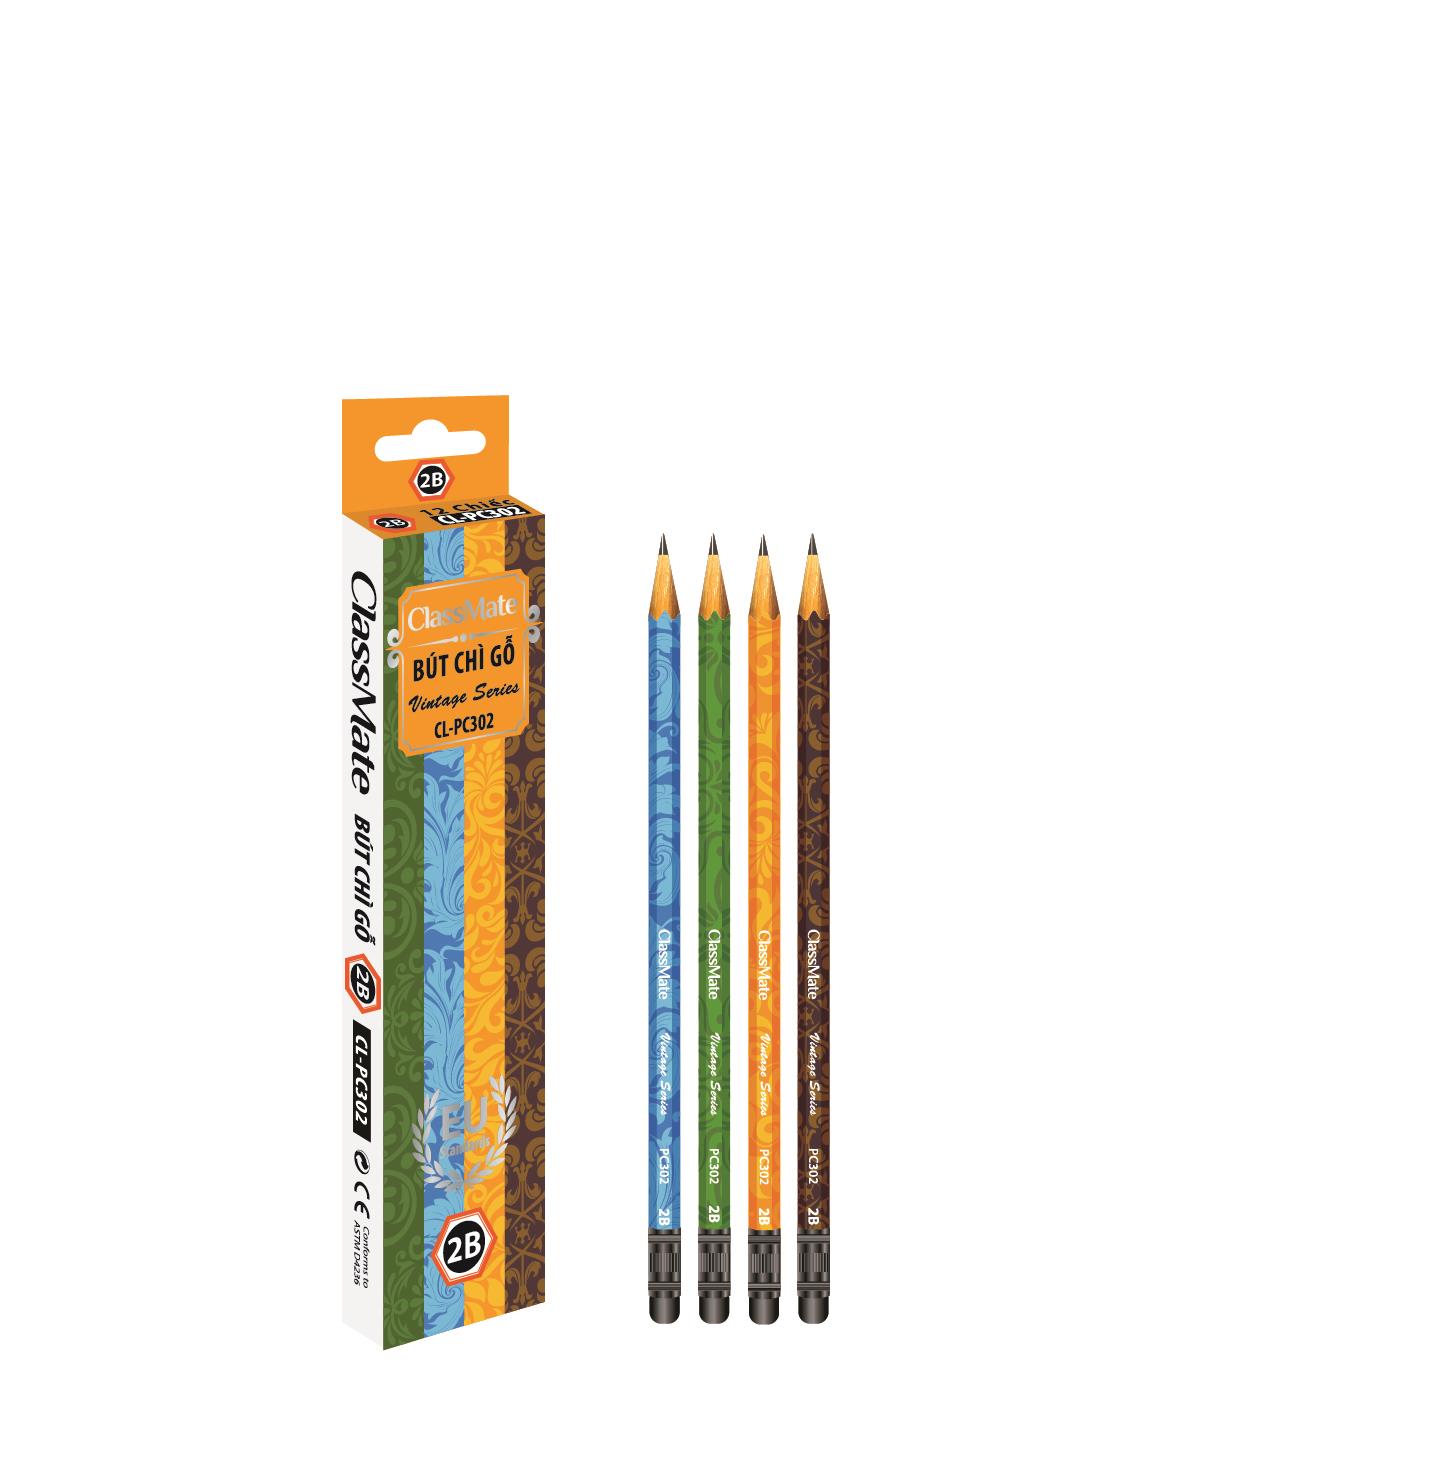 Bút chì gỗ 2B ( có tẩy) (CL-PC302)